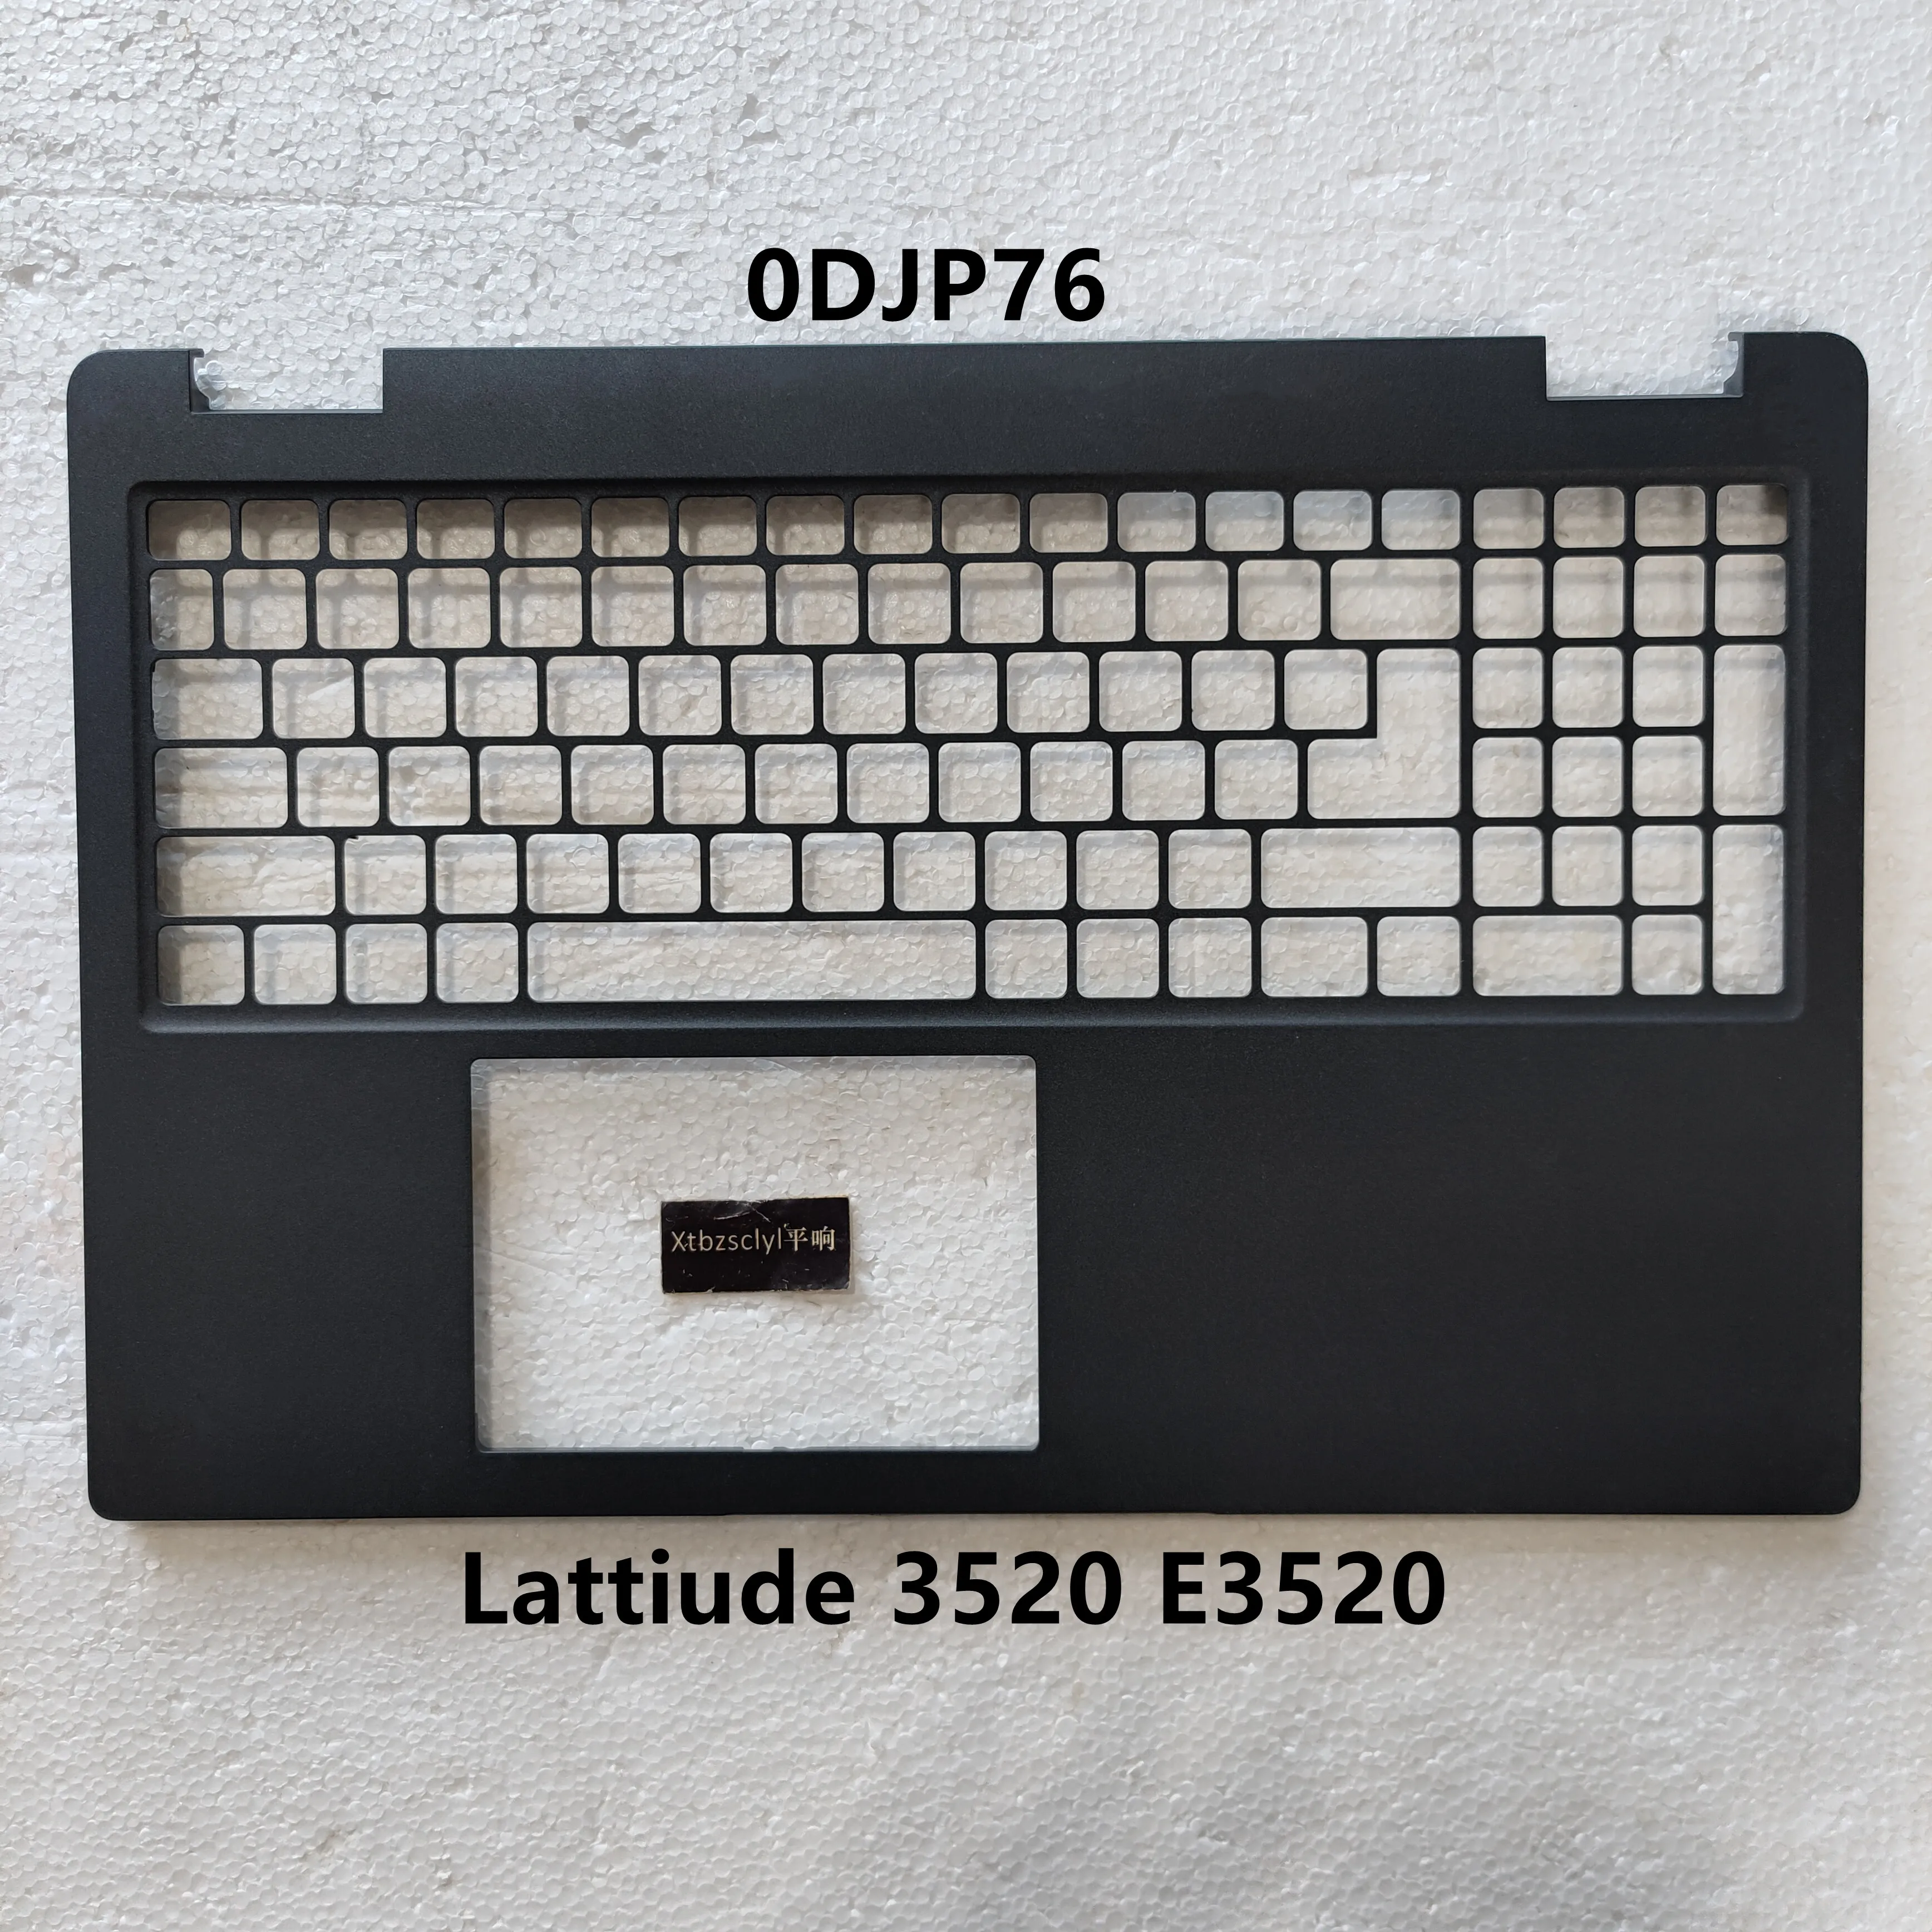 

New For DELL Latitude 15 3520 E3520 Upper Top Cover LCD Back Case Bottom Shell Laptop shell 0DJP76 DJP76